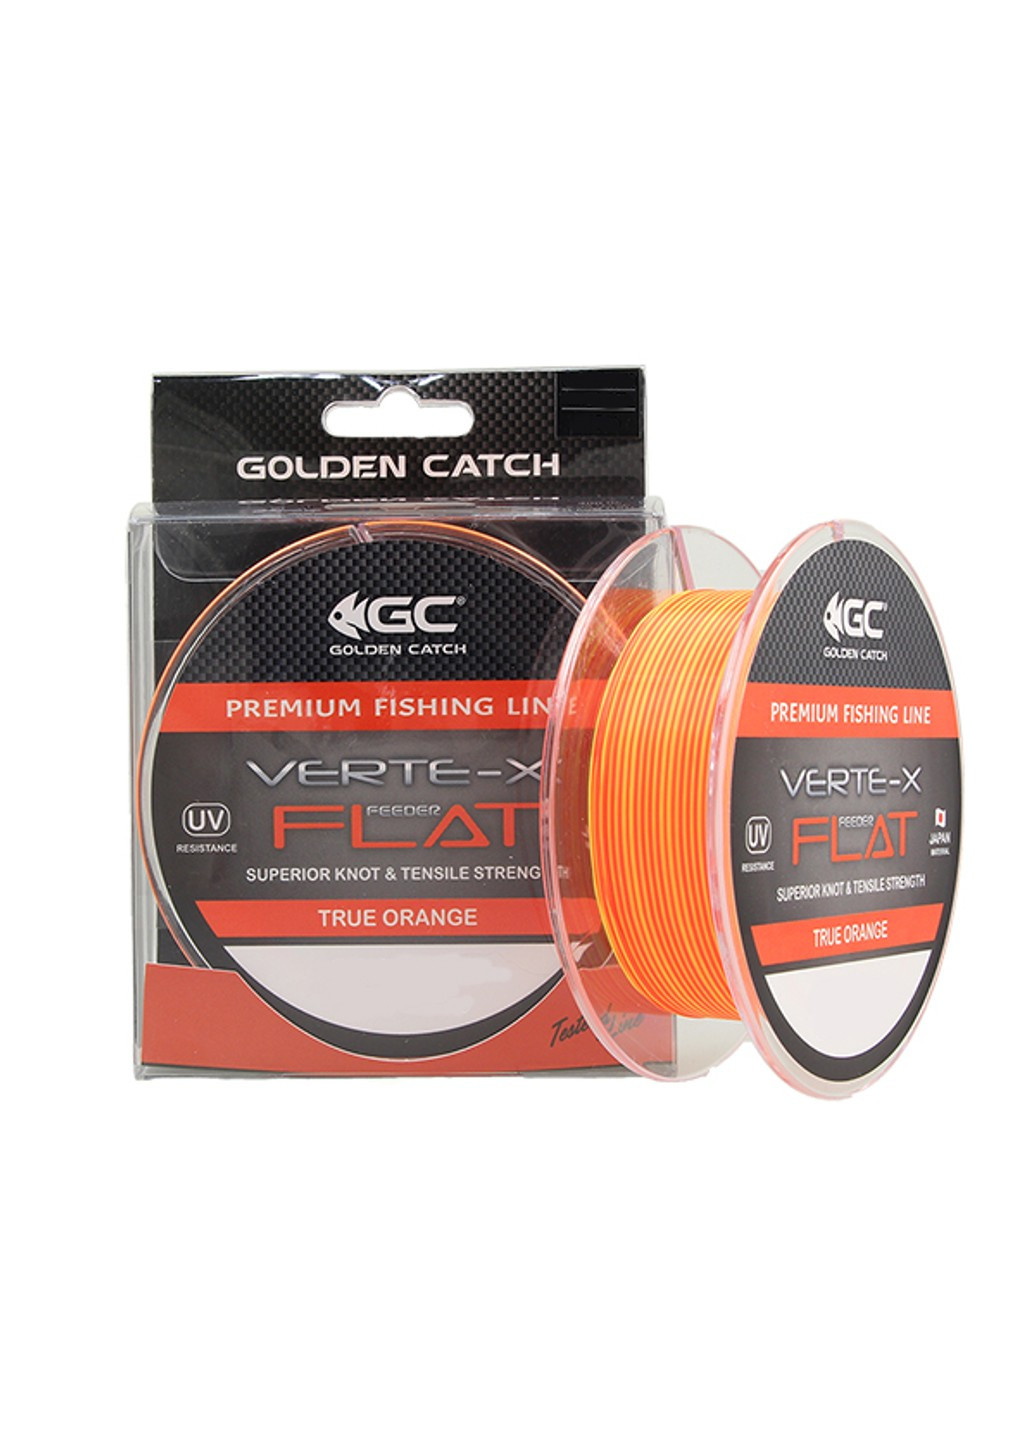 Волосінь GC Verte-X Flat TO Golden Catch помаранчева